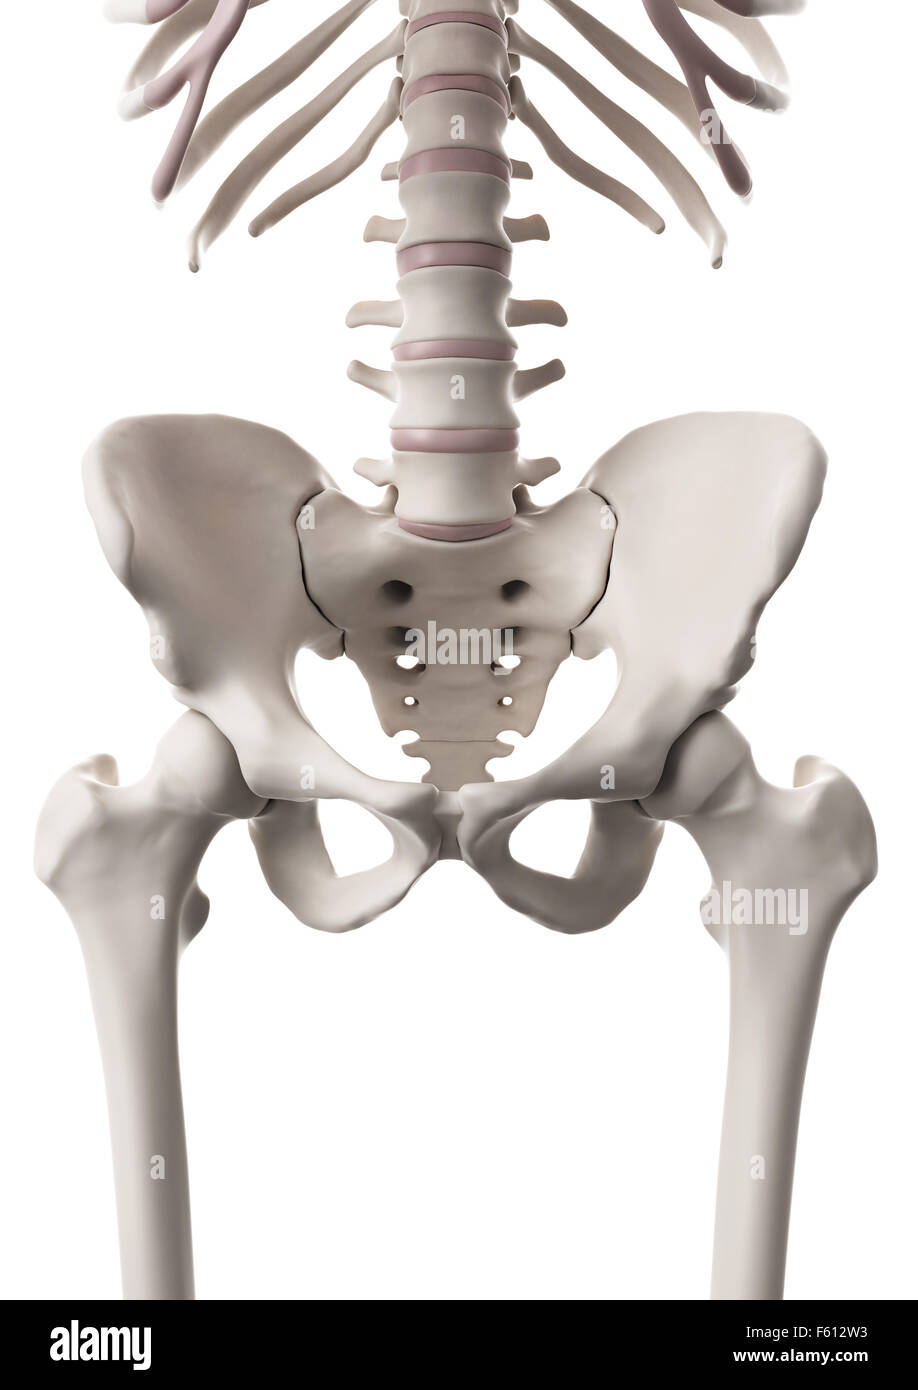 Dal punto di vista medico illustrazione accurata del sistema scheletrico - l'anca e colonna vertebrale inferiore Foto Stock